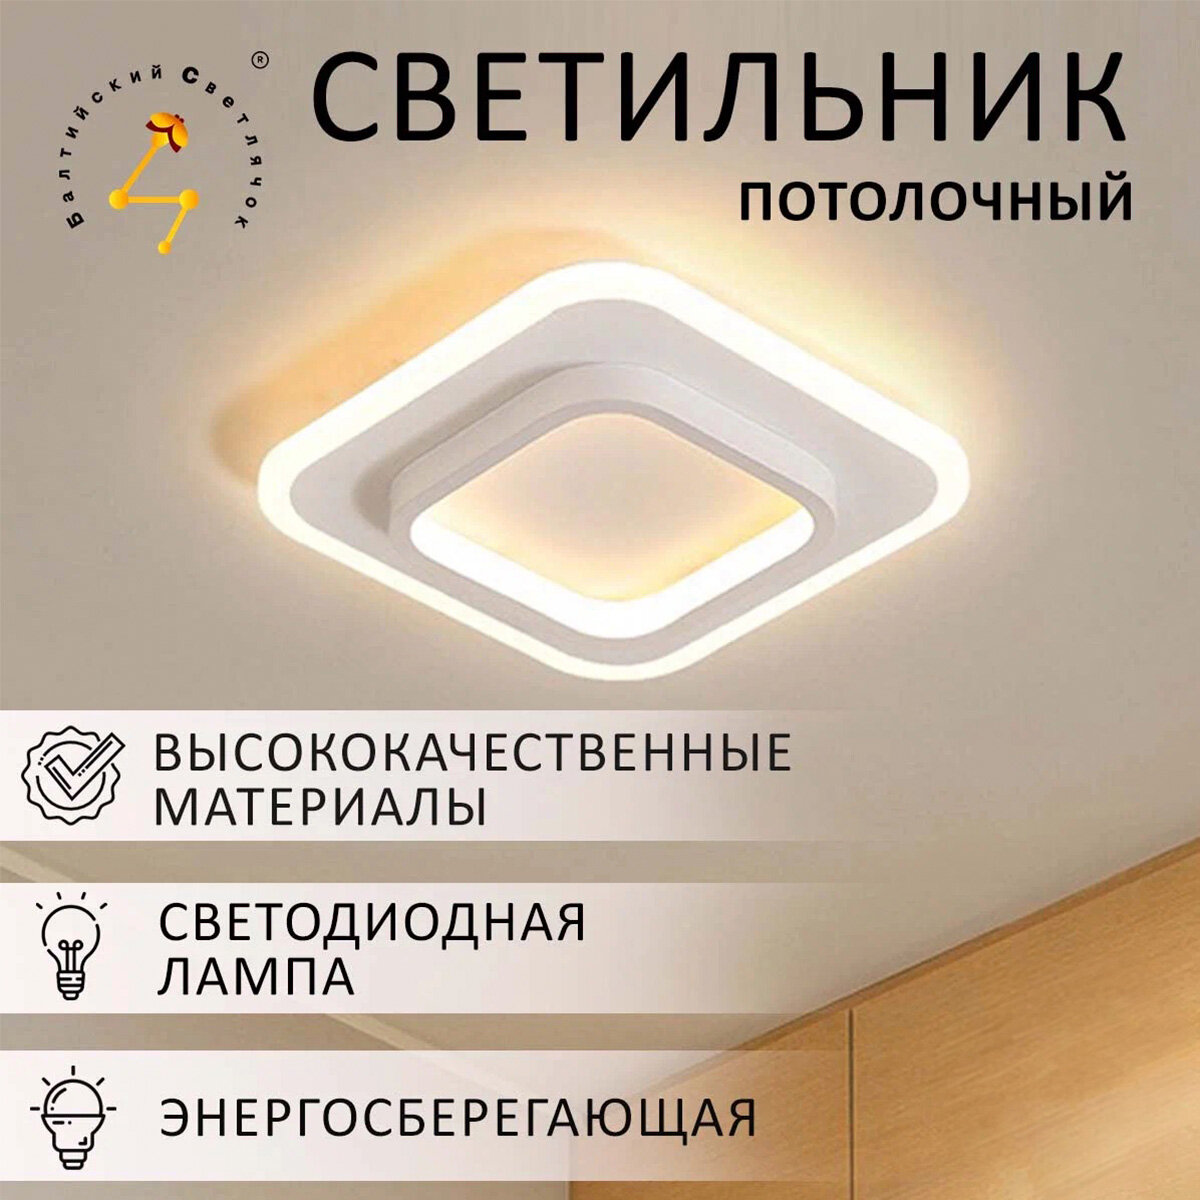 Светильник потолочный светодиодный Балтийский Светлячок LED 26 Вт, тёплый свет